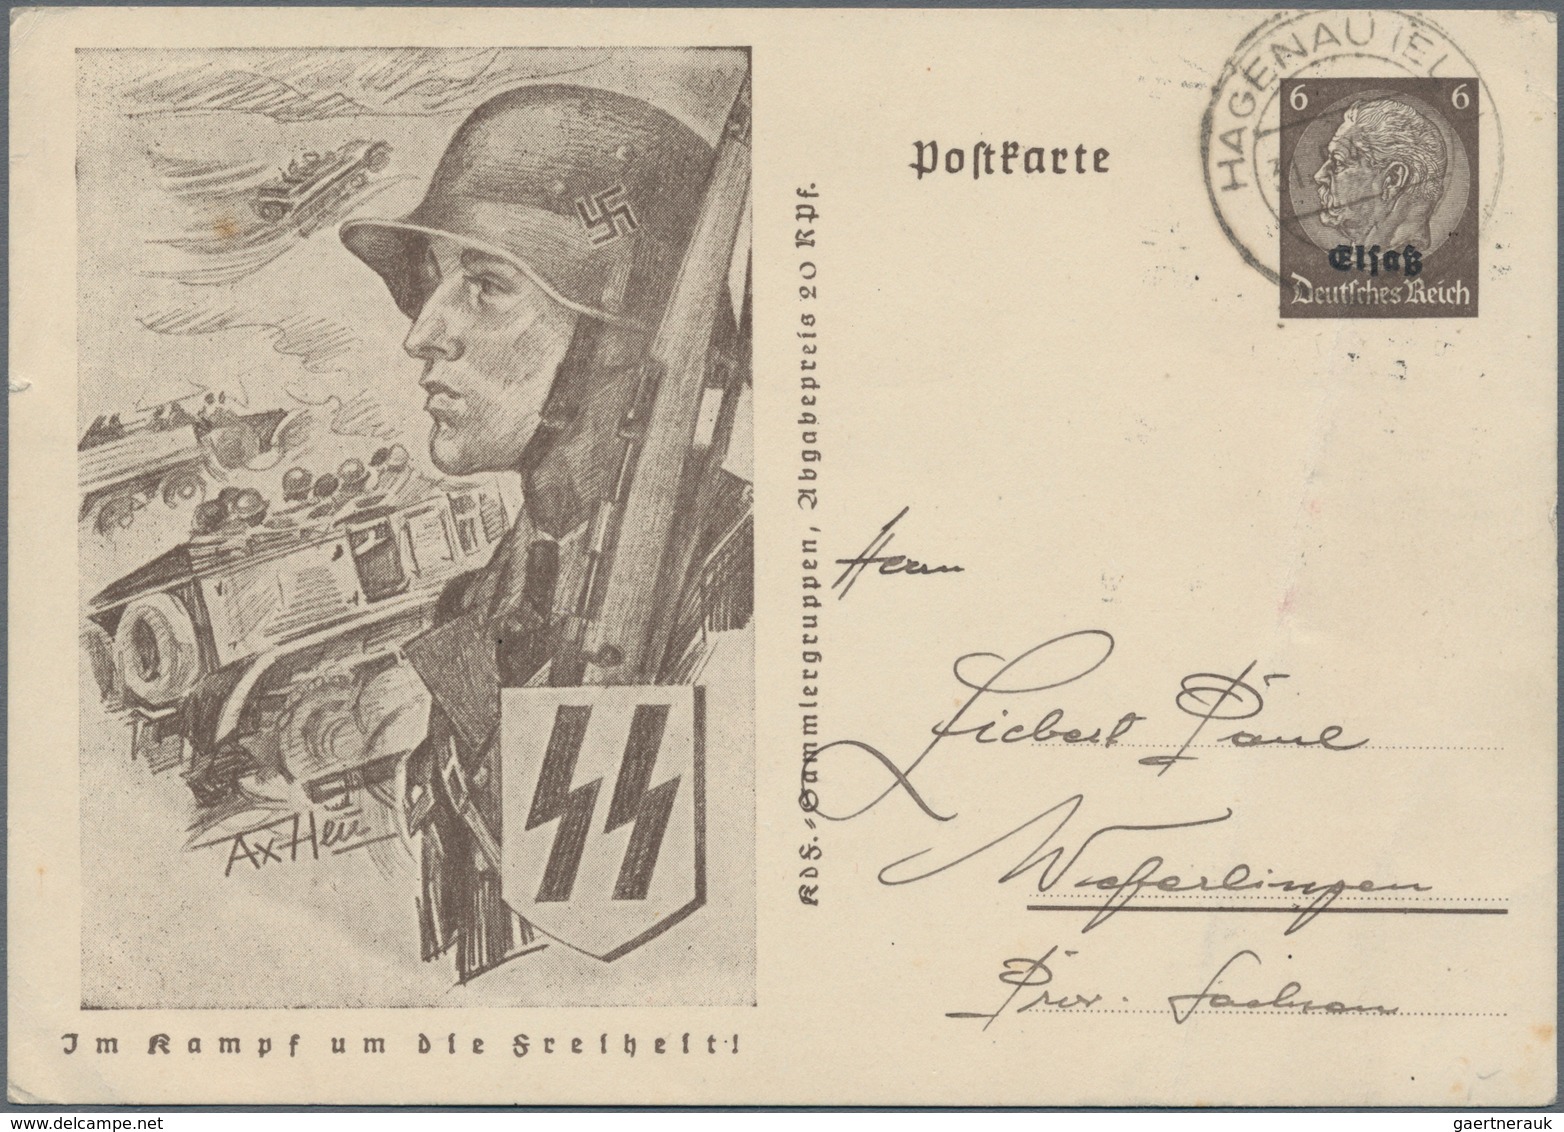 Deutsches Reich - Ganzsachen: 1872-1945, umfangreiche Sammlung mit vielen tausend gebrauchten und un